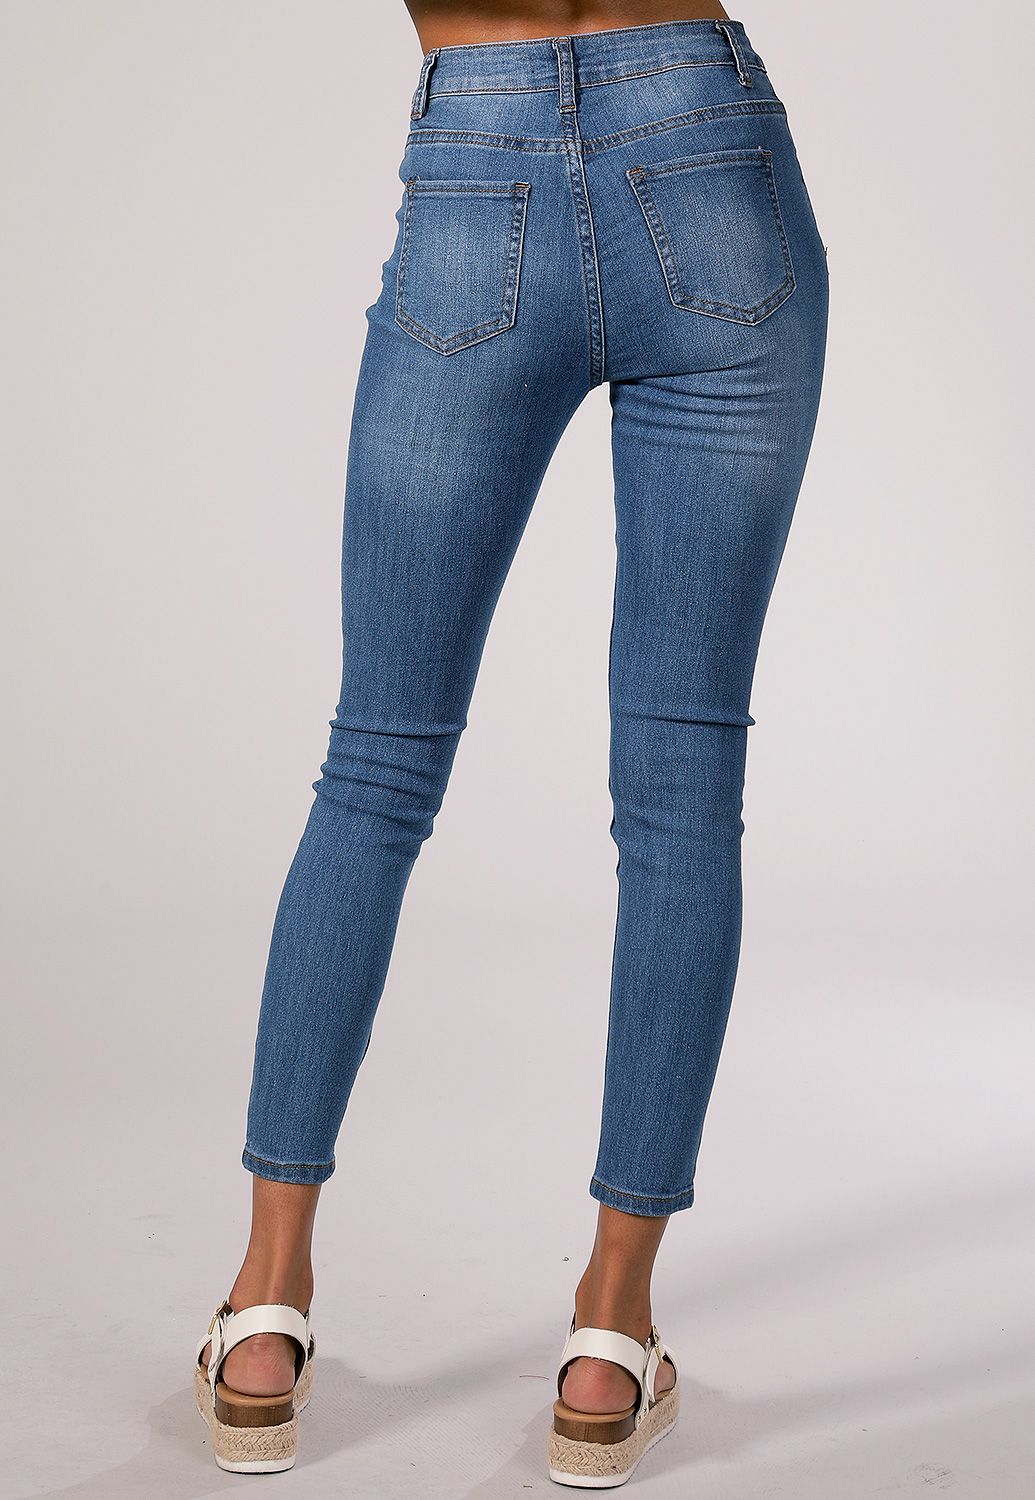 High Rise Skinny Jeans | Shop at Papaya Clothing